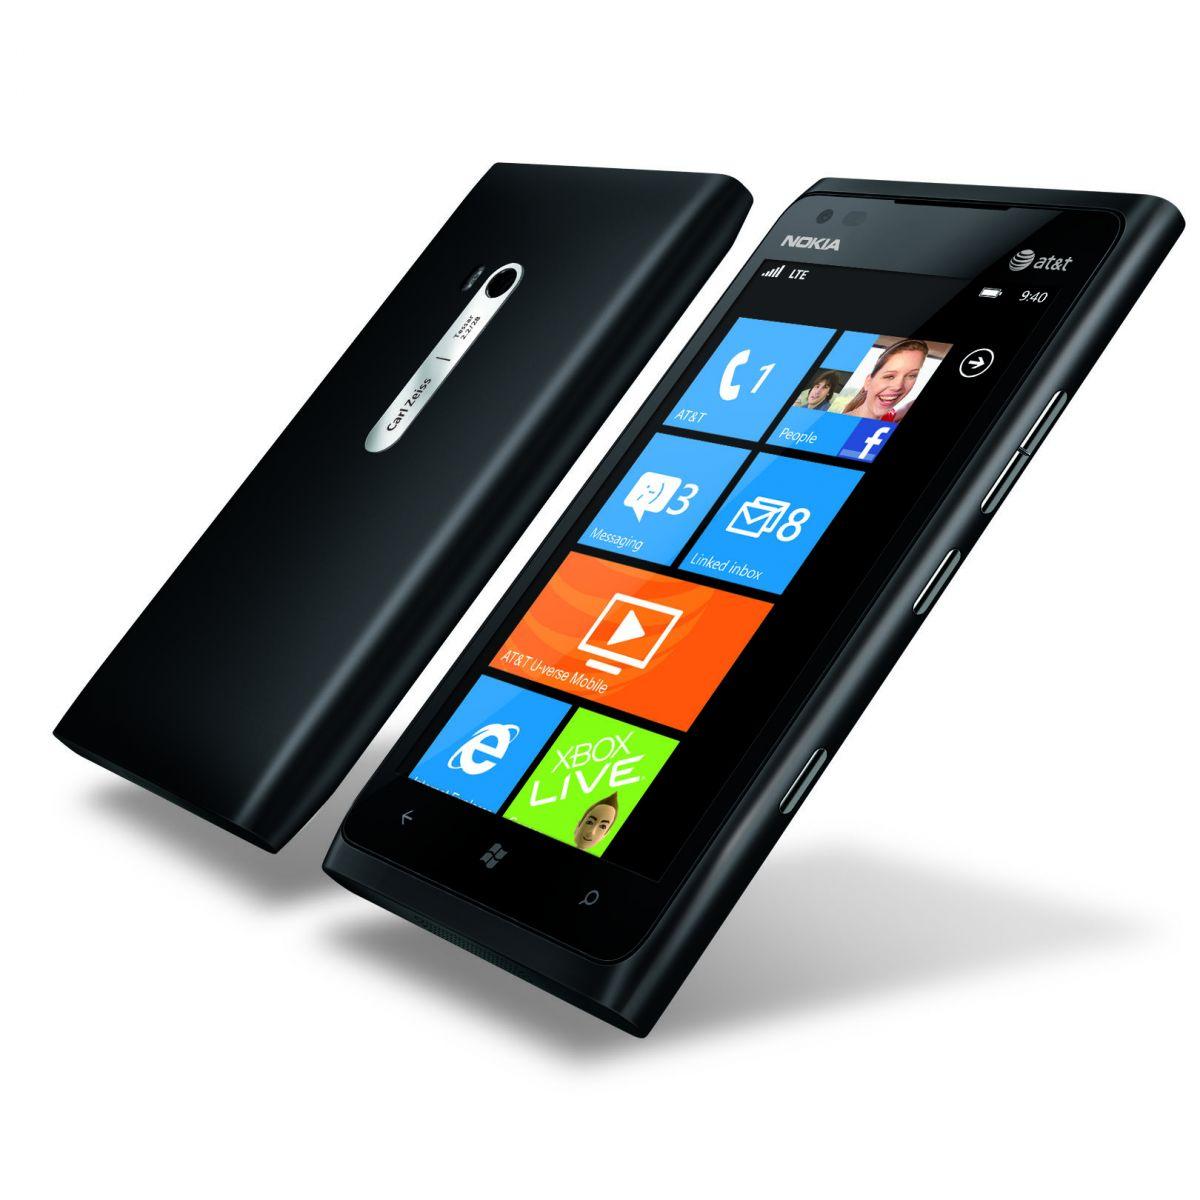 Nokia Lumia 900 nærmer seg norske mobilhyller.